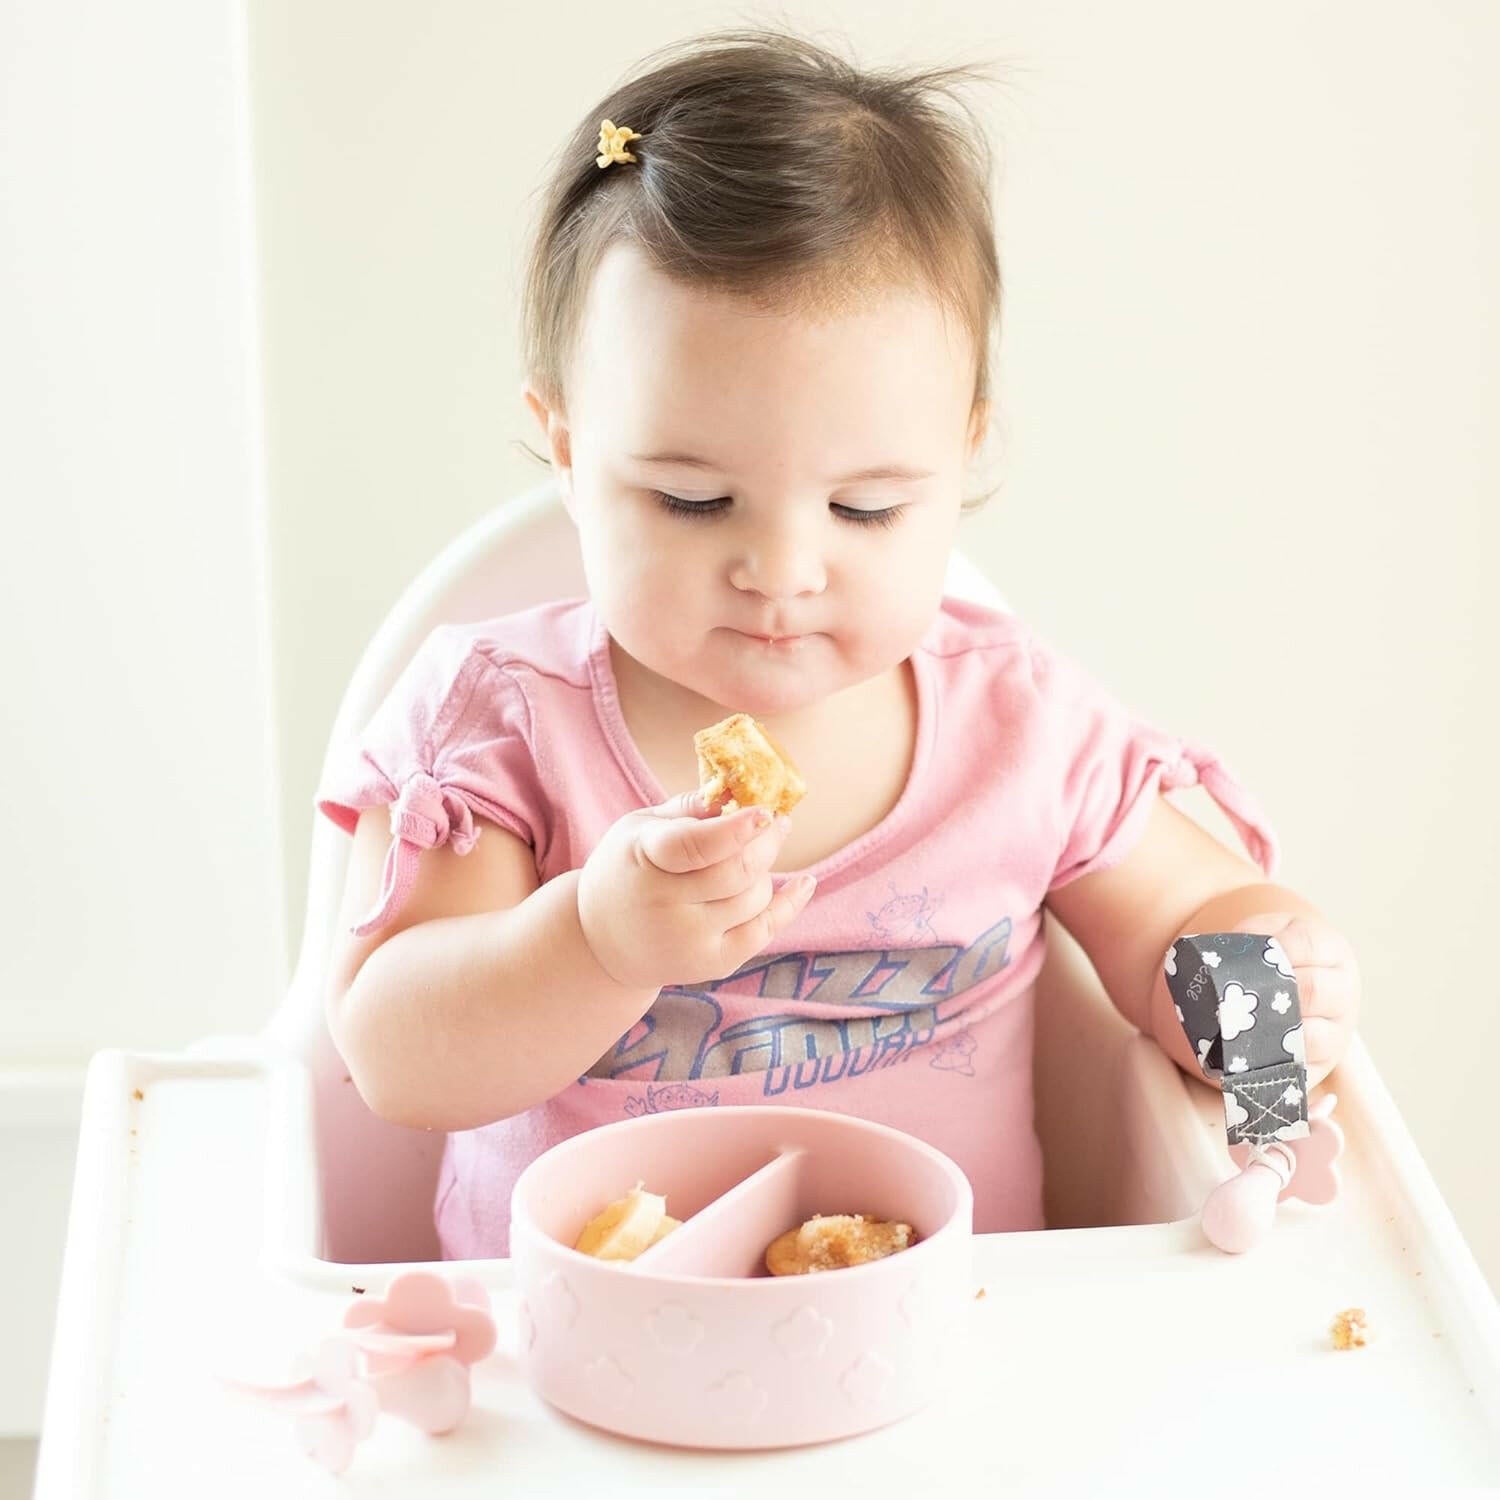 أوعية جرابيس للأطفال من السيليكون لإطعام الأطفال الصغار، وعاء مقسم، آمن للاستخدام في غسالة الأطباق والمعقم